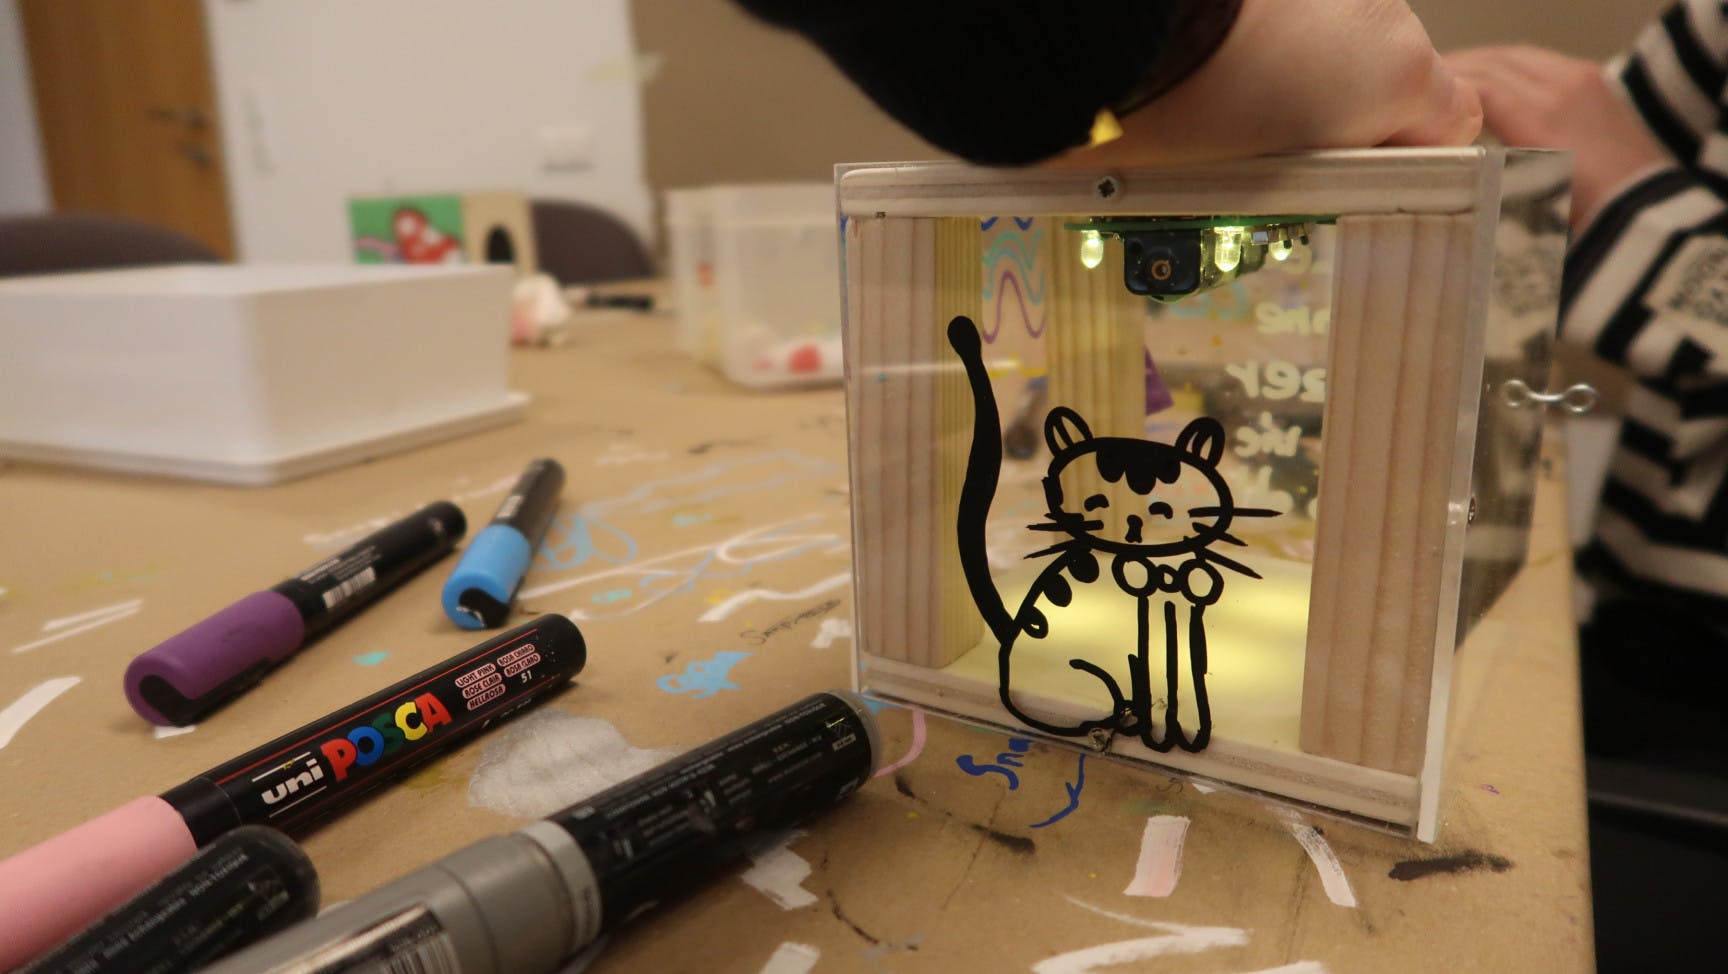 Solarlampe mit einer gezeichneten Katze darauf und ein paar Stifte.